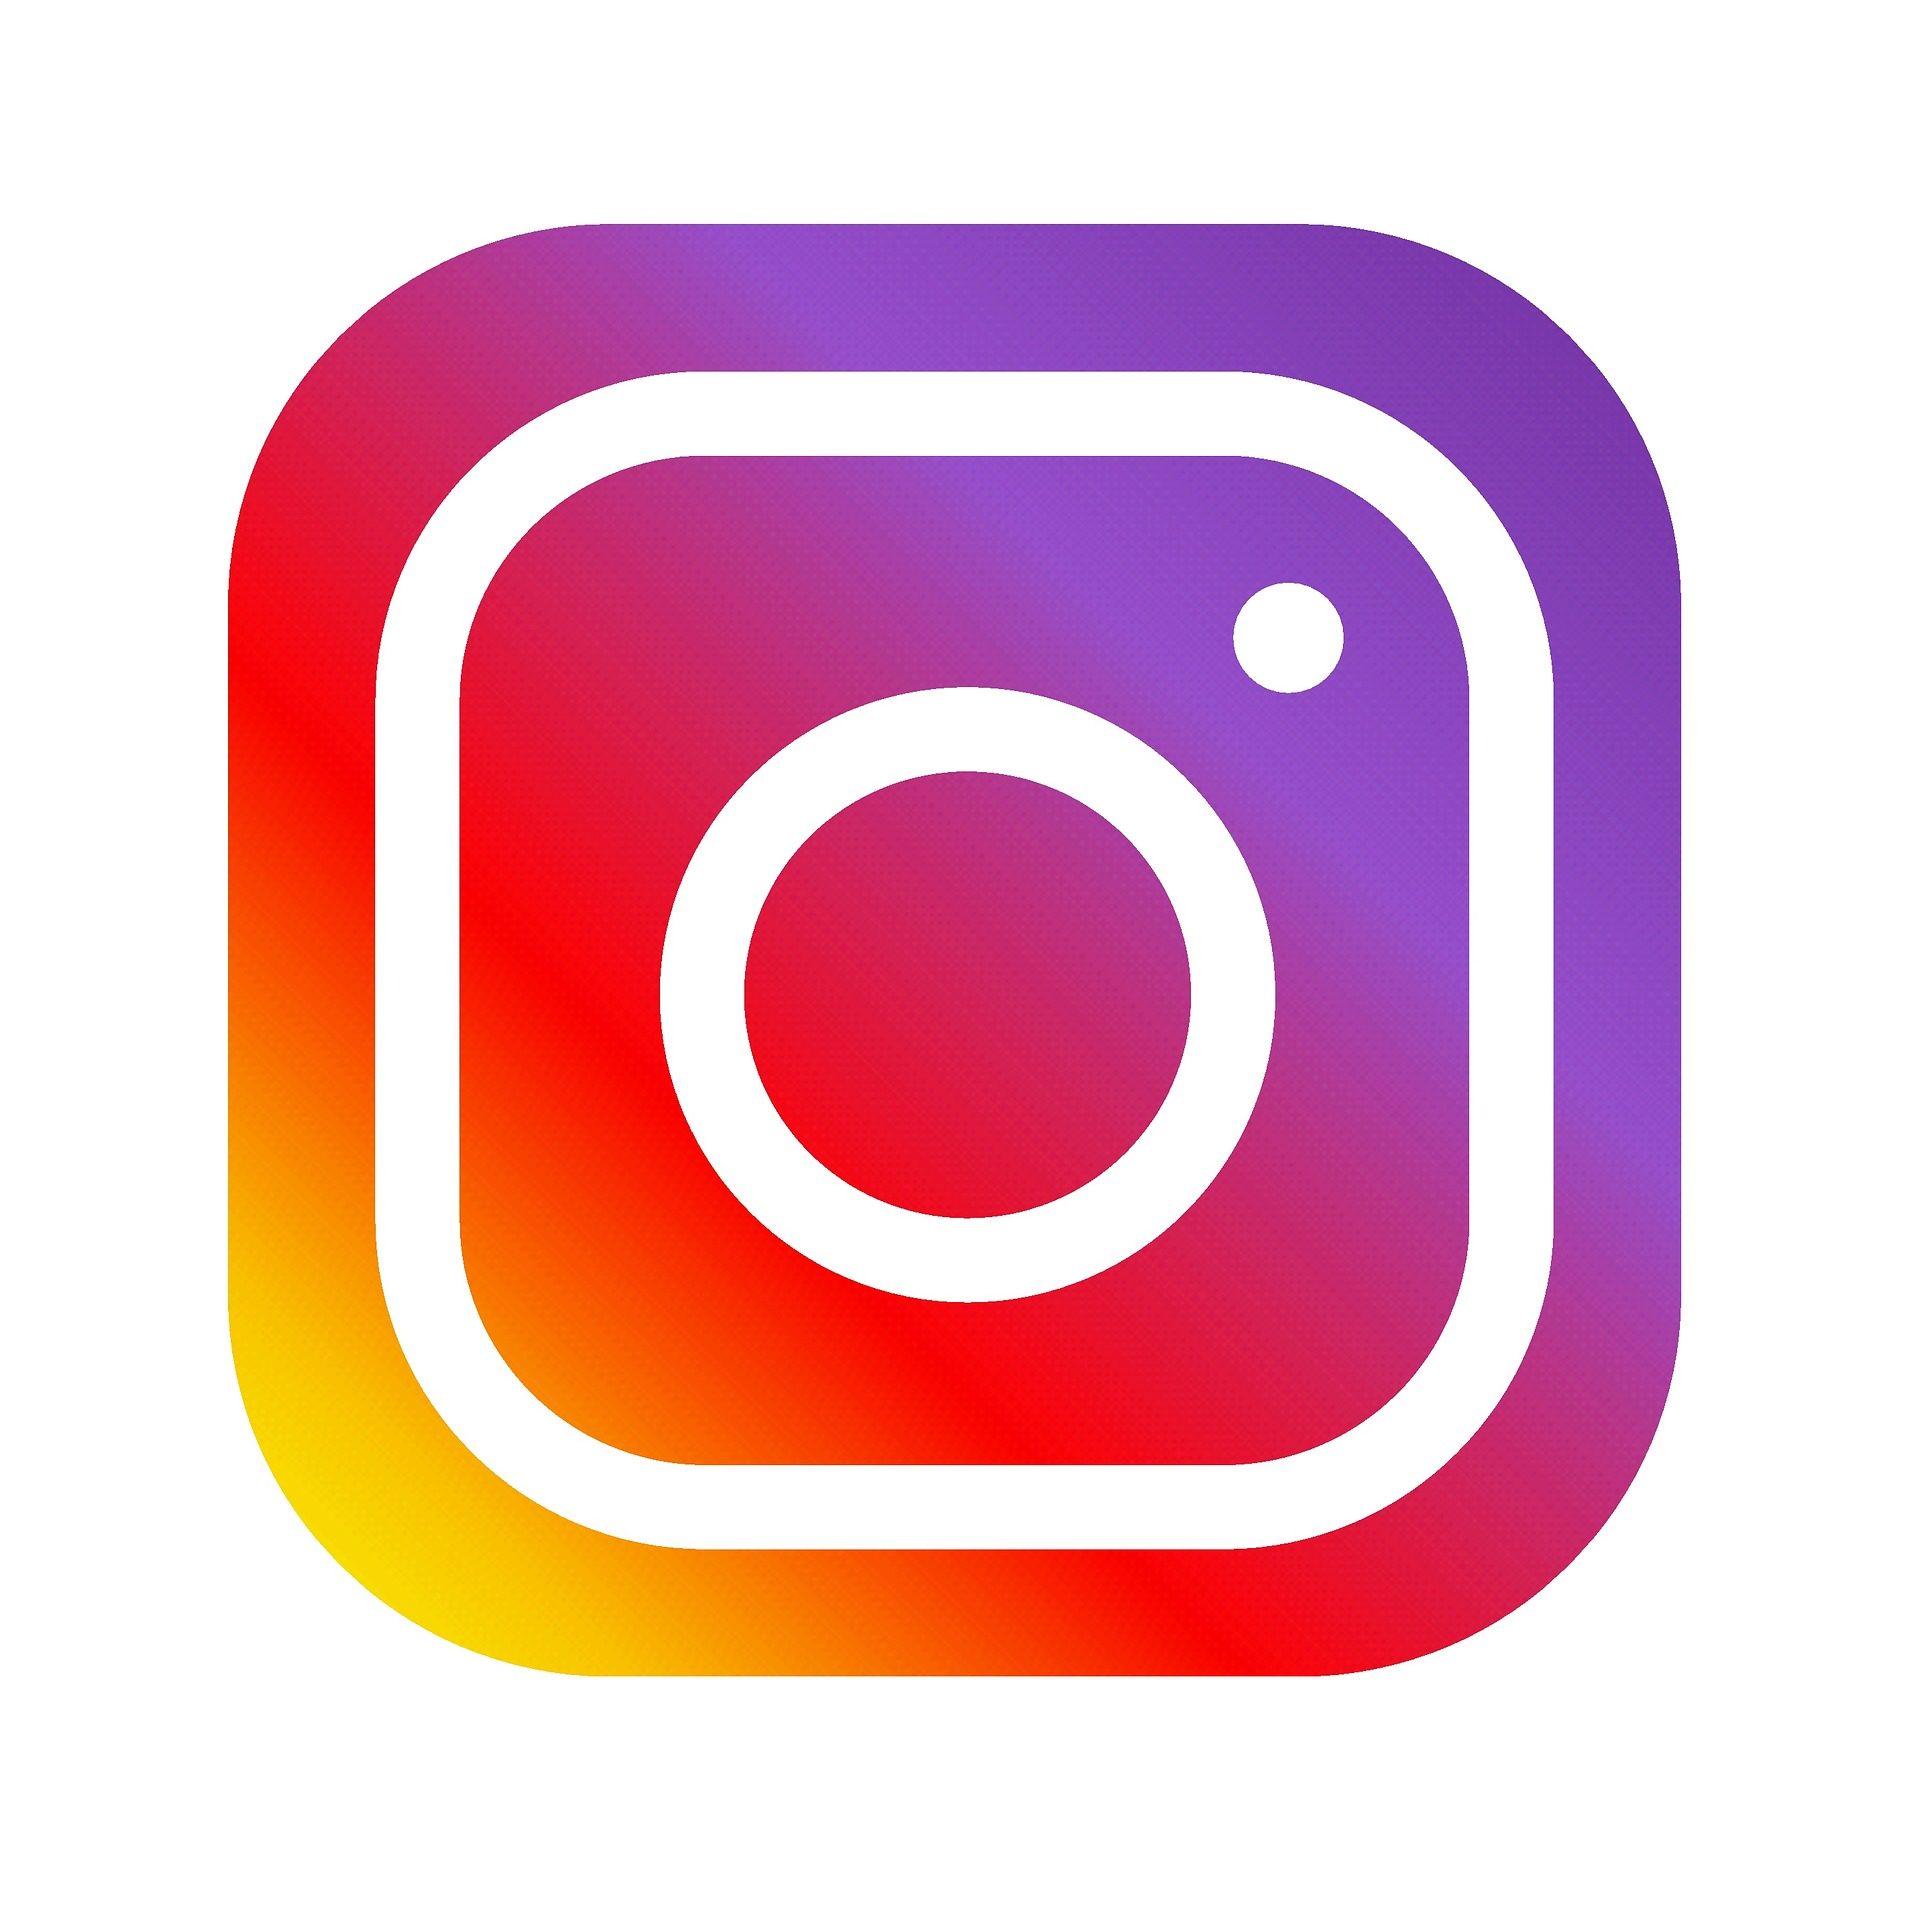 Seguici su Instagram!